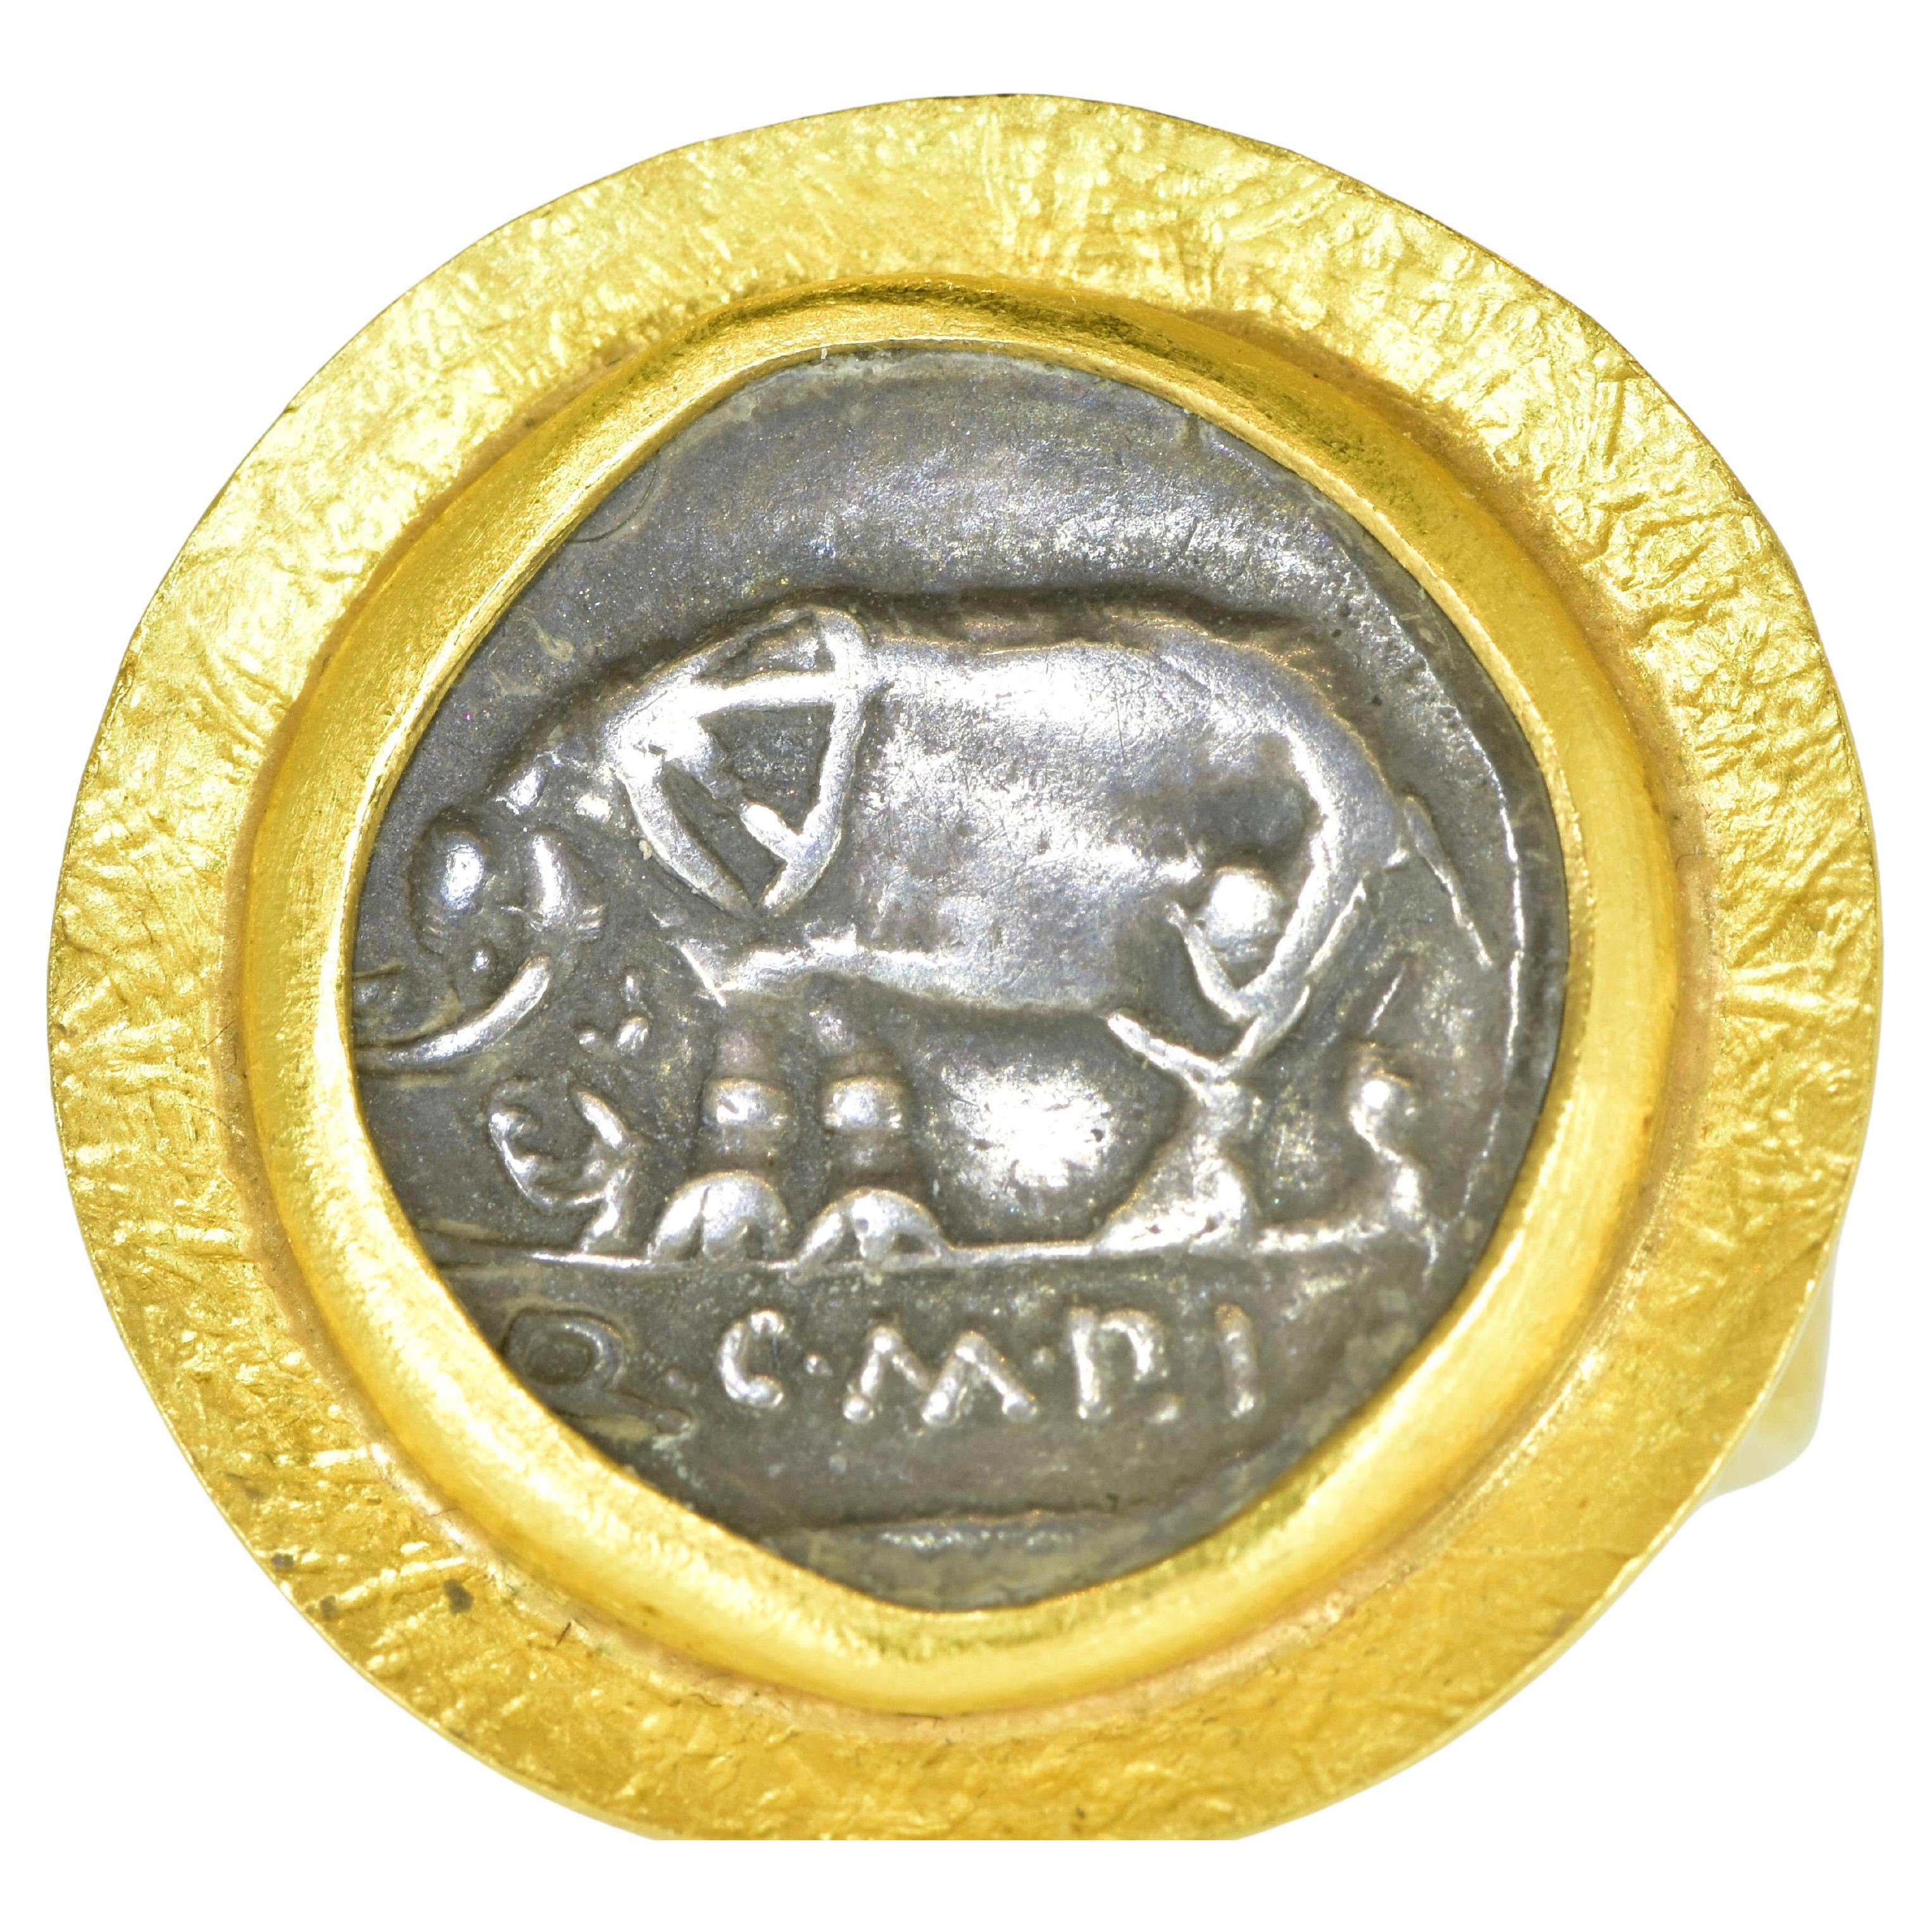 Roman ancien, 81 av. J.-C  Bague en or 22 carats centrée sur l'authentique Denarius